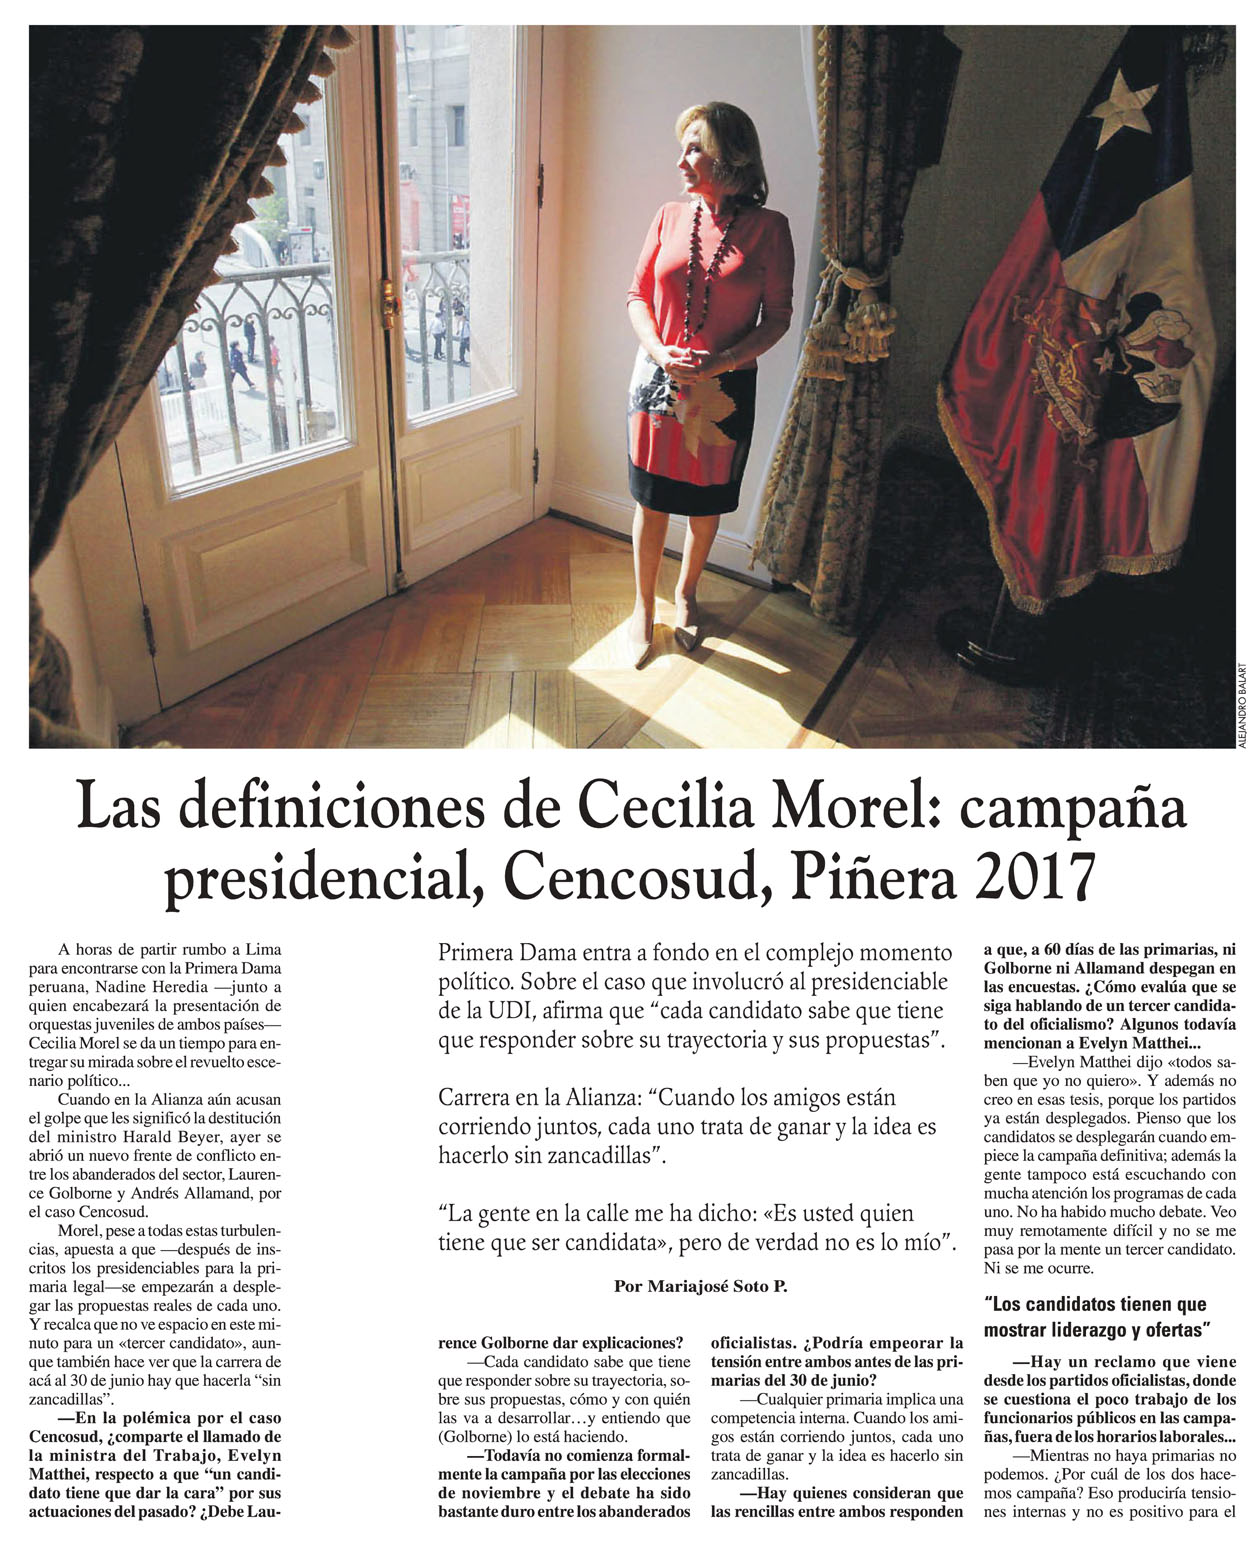 Las definiciones de Cecilia Morel: campaña presidencial, Cencosud, Piñera 2017